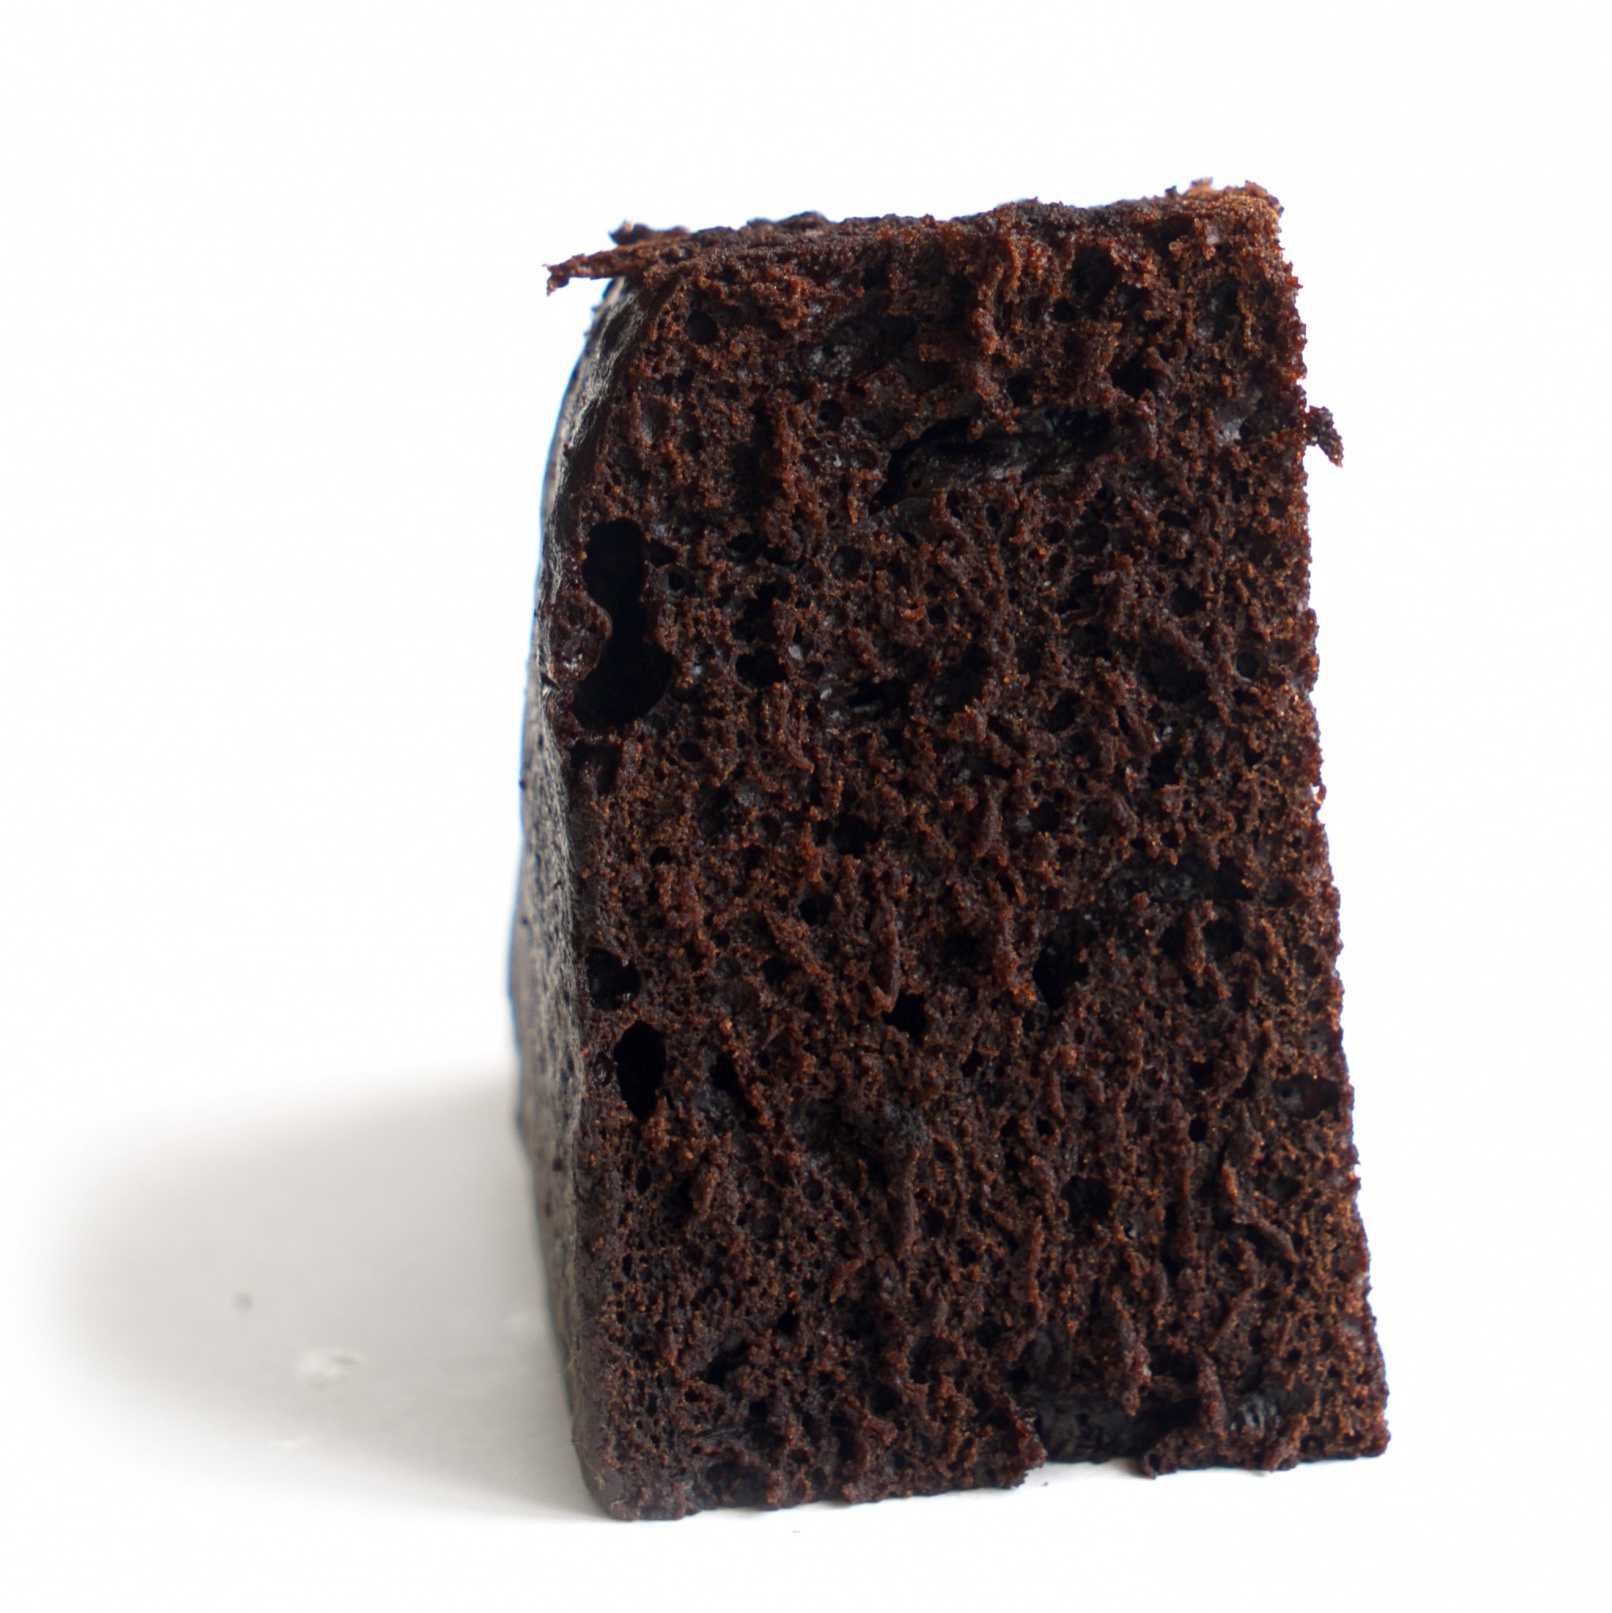 Электронный рецепт Шоколадного торта «Чёрная магия» от Энди шефа  | Фото — Магазин Andy Chef  1